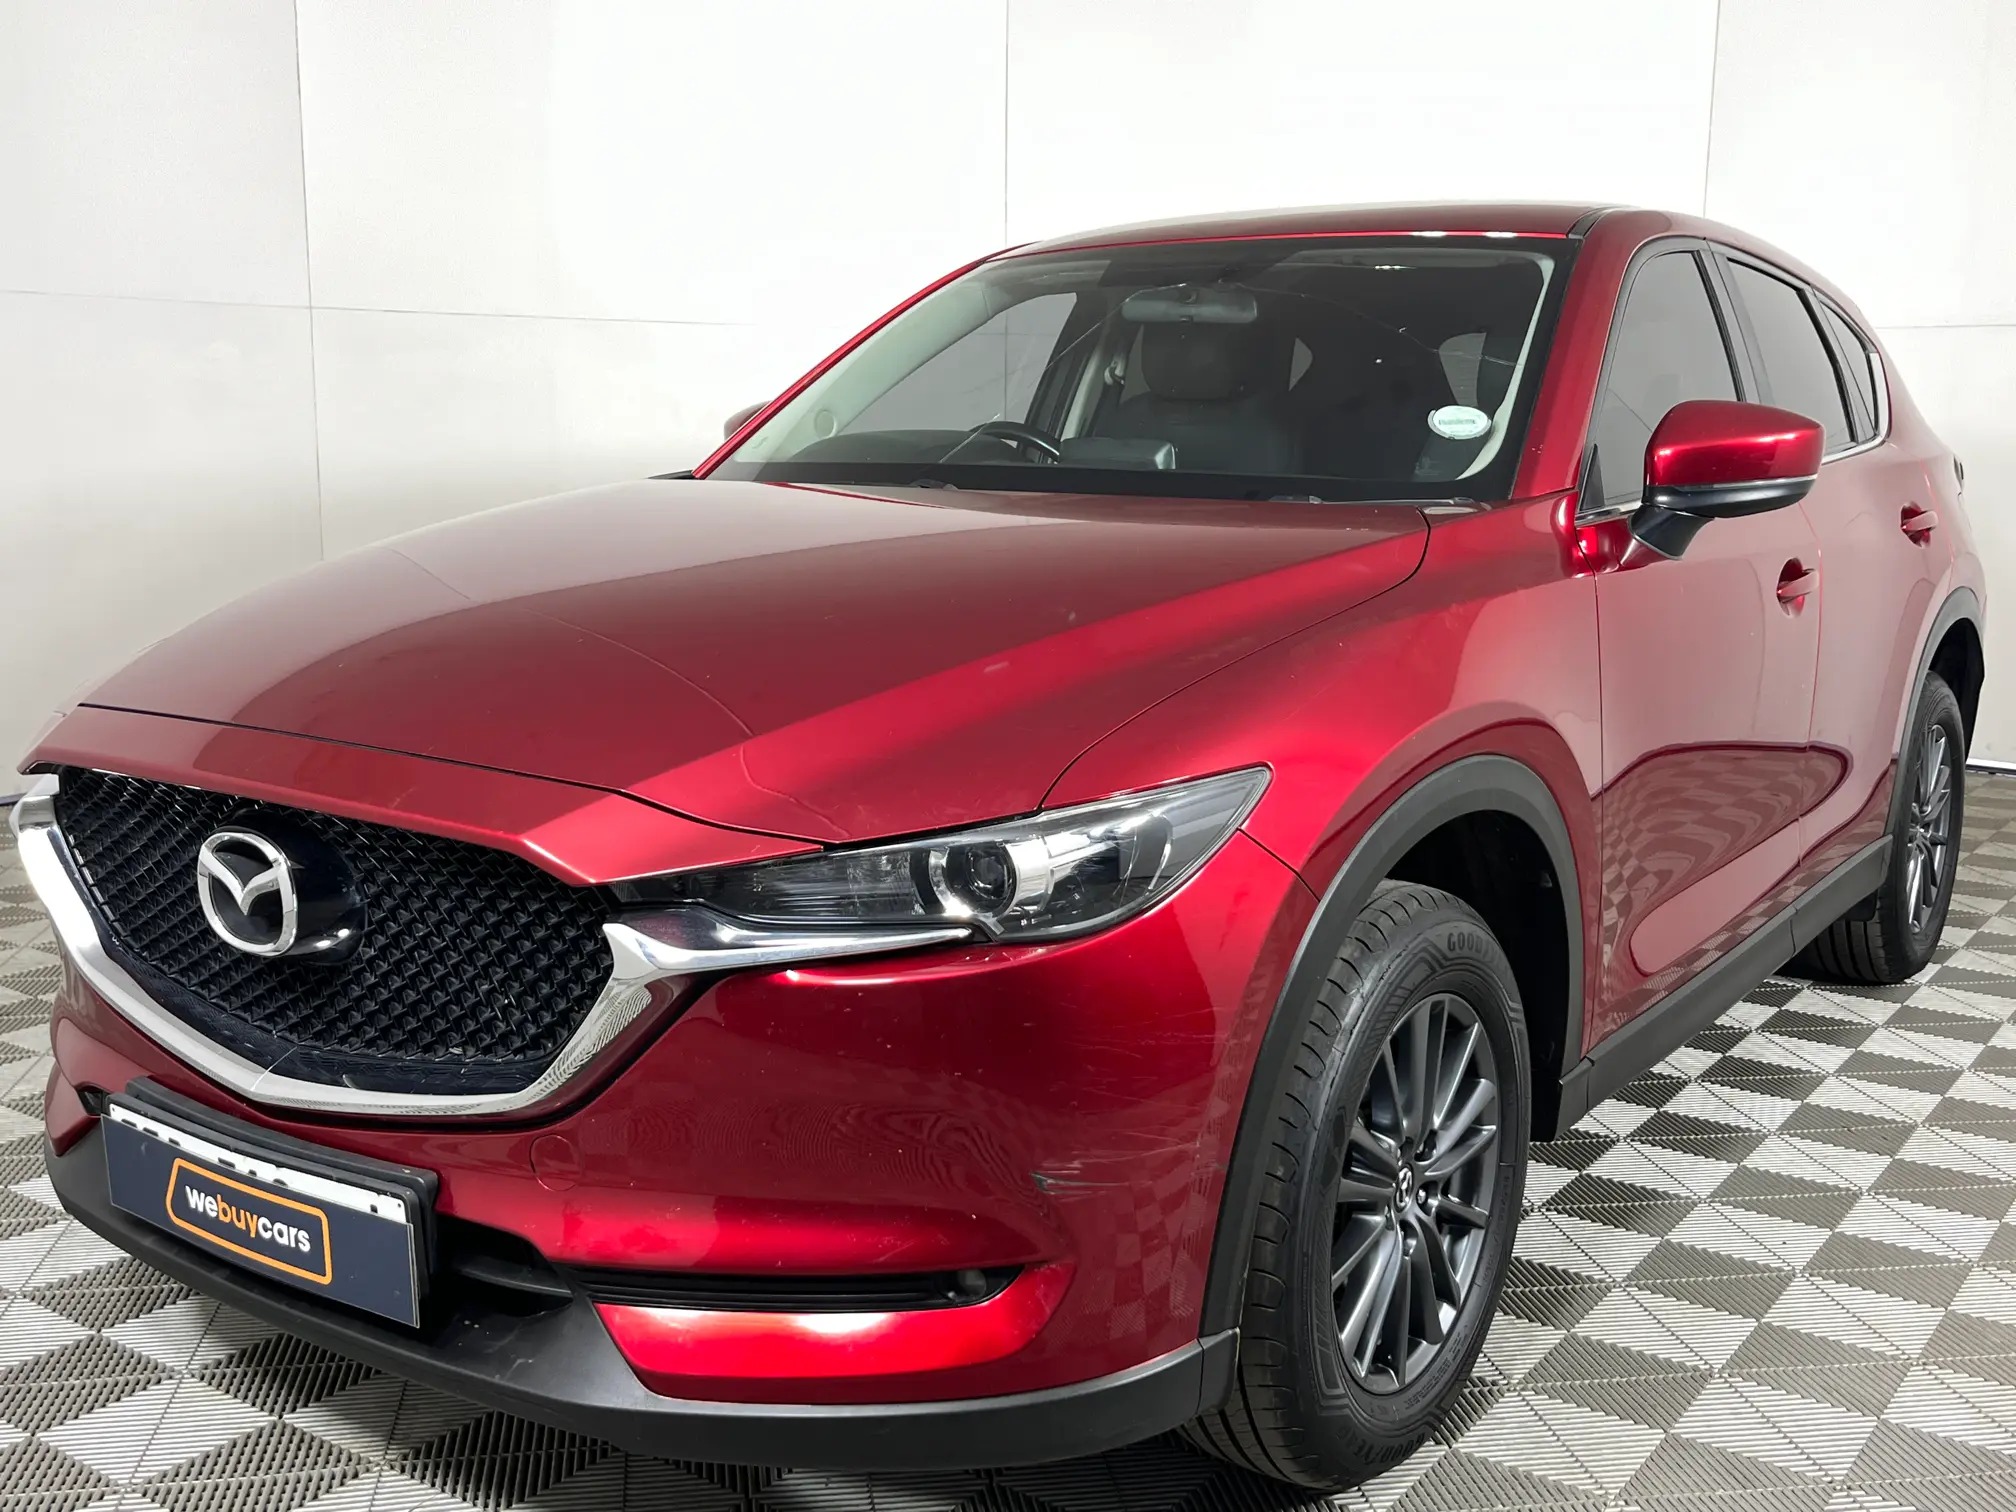 2019 Mazda CX-5 2.0 Active Auto